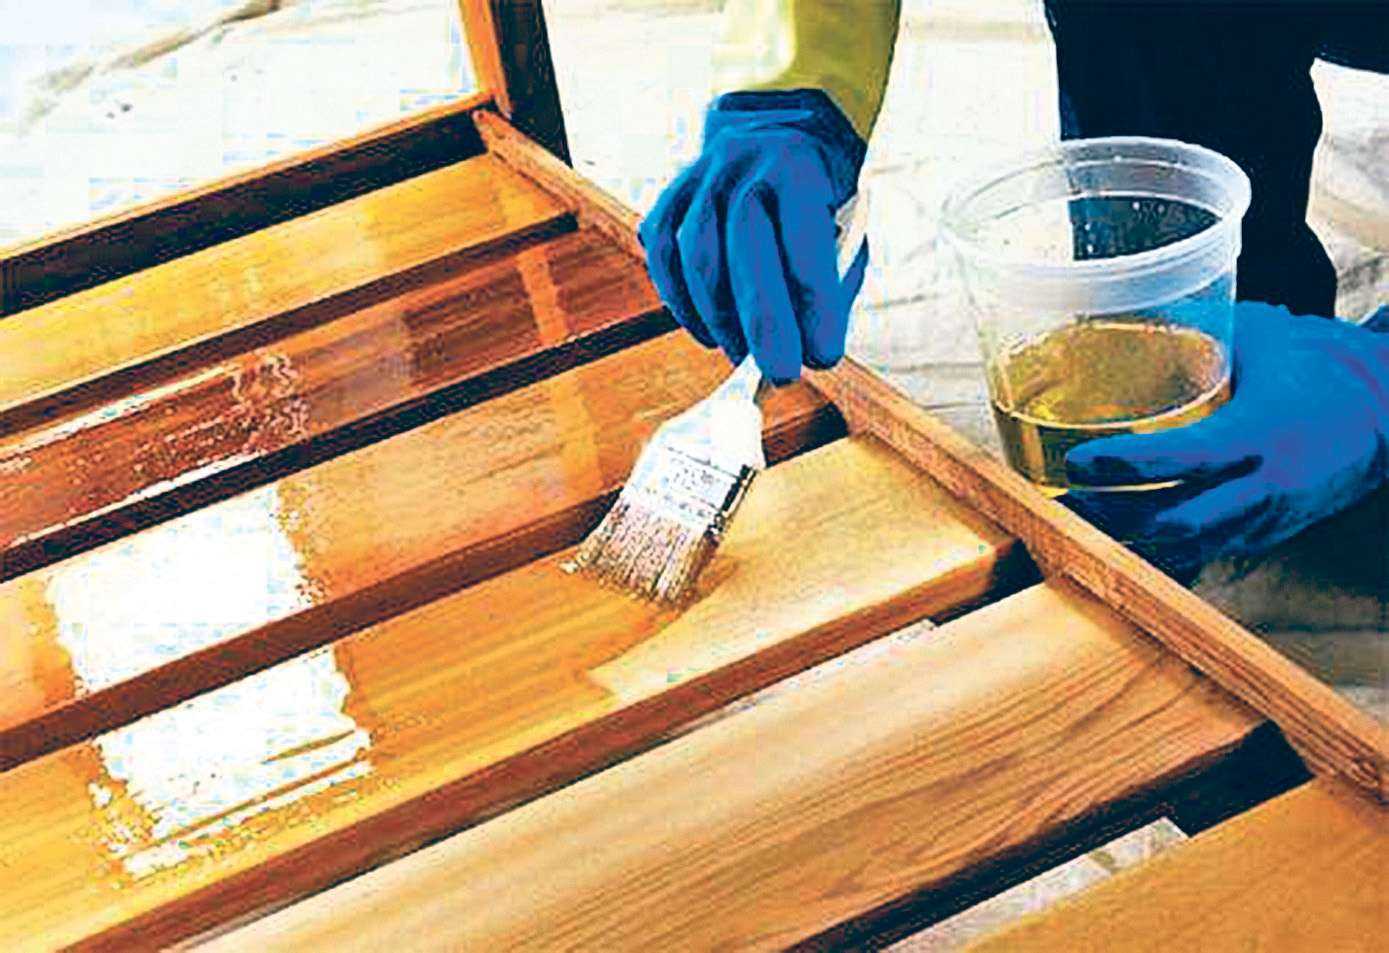 Слой лака на столе защищает поверхность, предотвращает разрушение древесины Рассмотрим основные виды лаков для дерева и технику нанесения